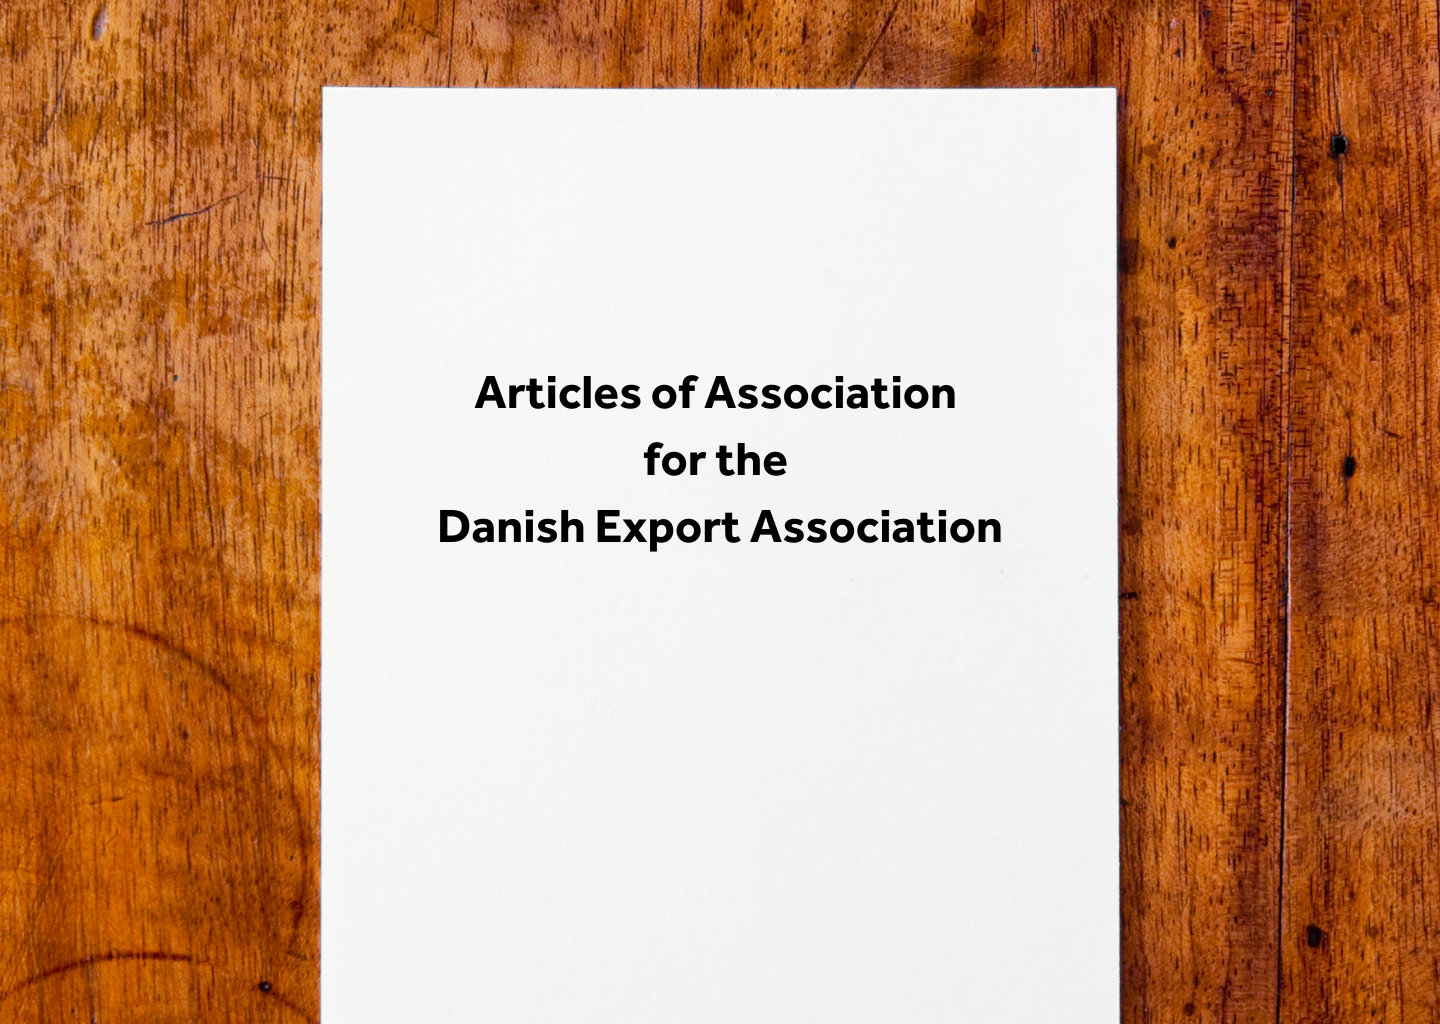 Danish Export Associations vedtægter